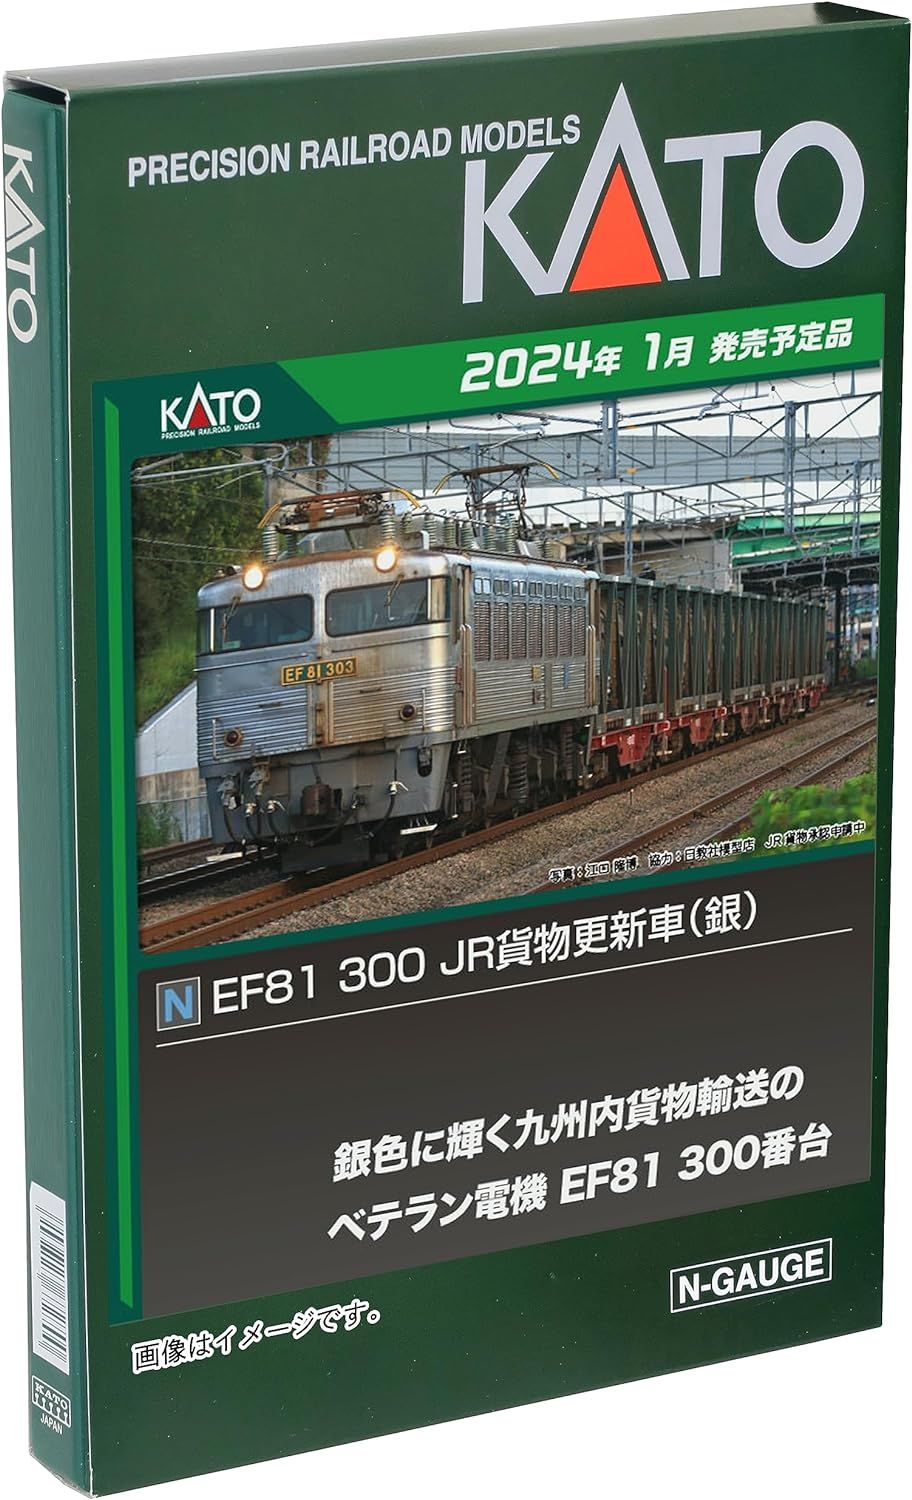 KATO N Gauge EF81 300 JR 货运更新车（银色）3067-3 模型铁路电力机车 